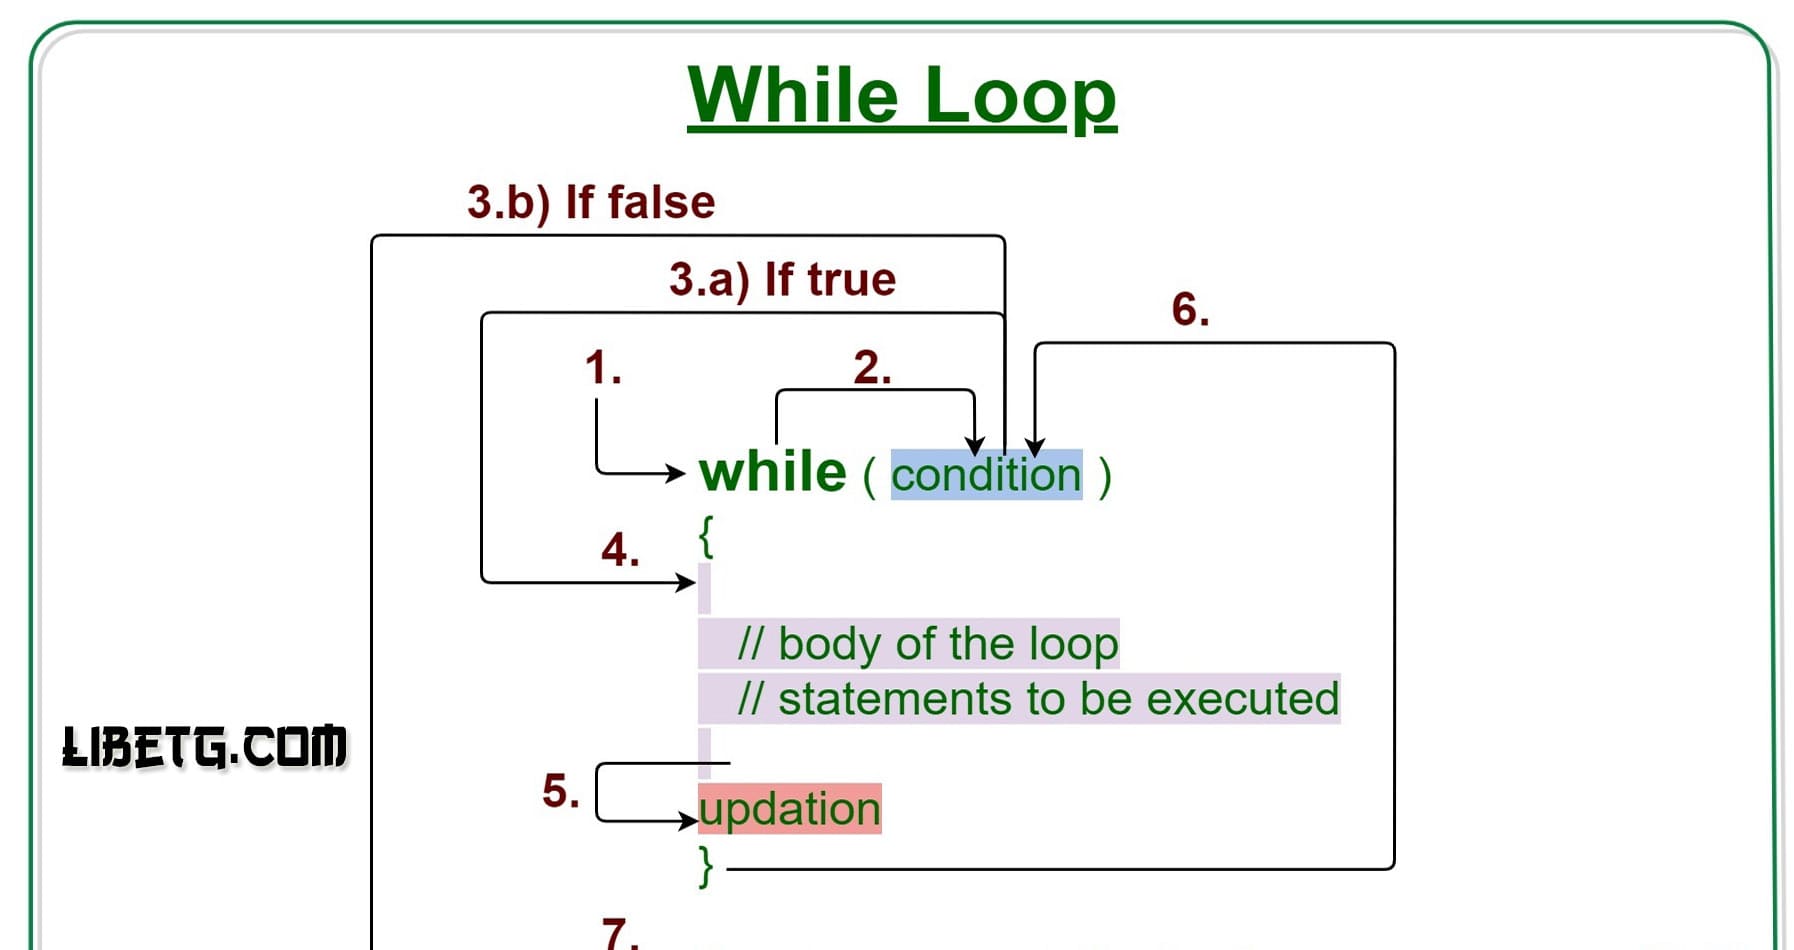 While Loop